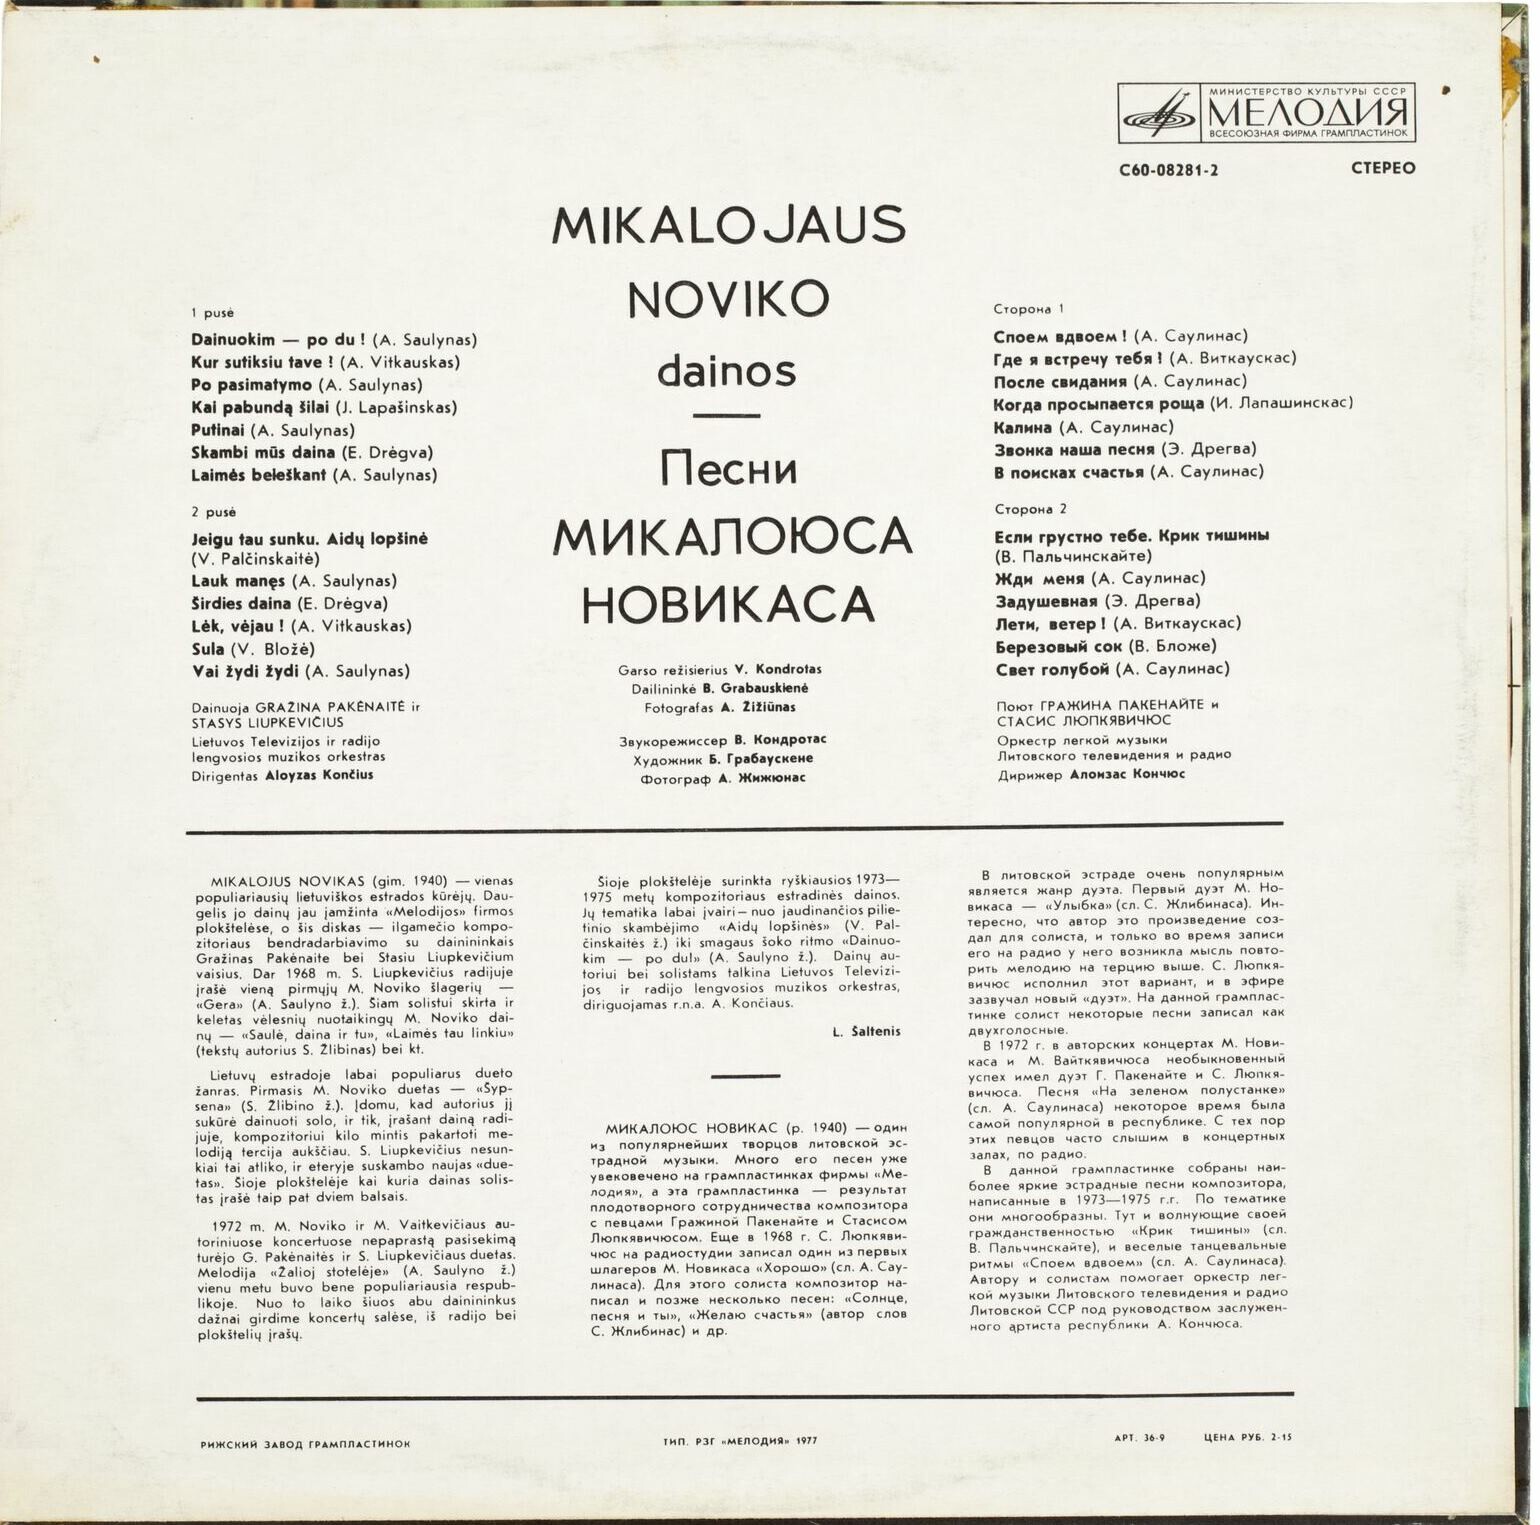 Песни Микалоюса НОВИКАСА (на литовском языке)